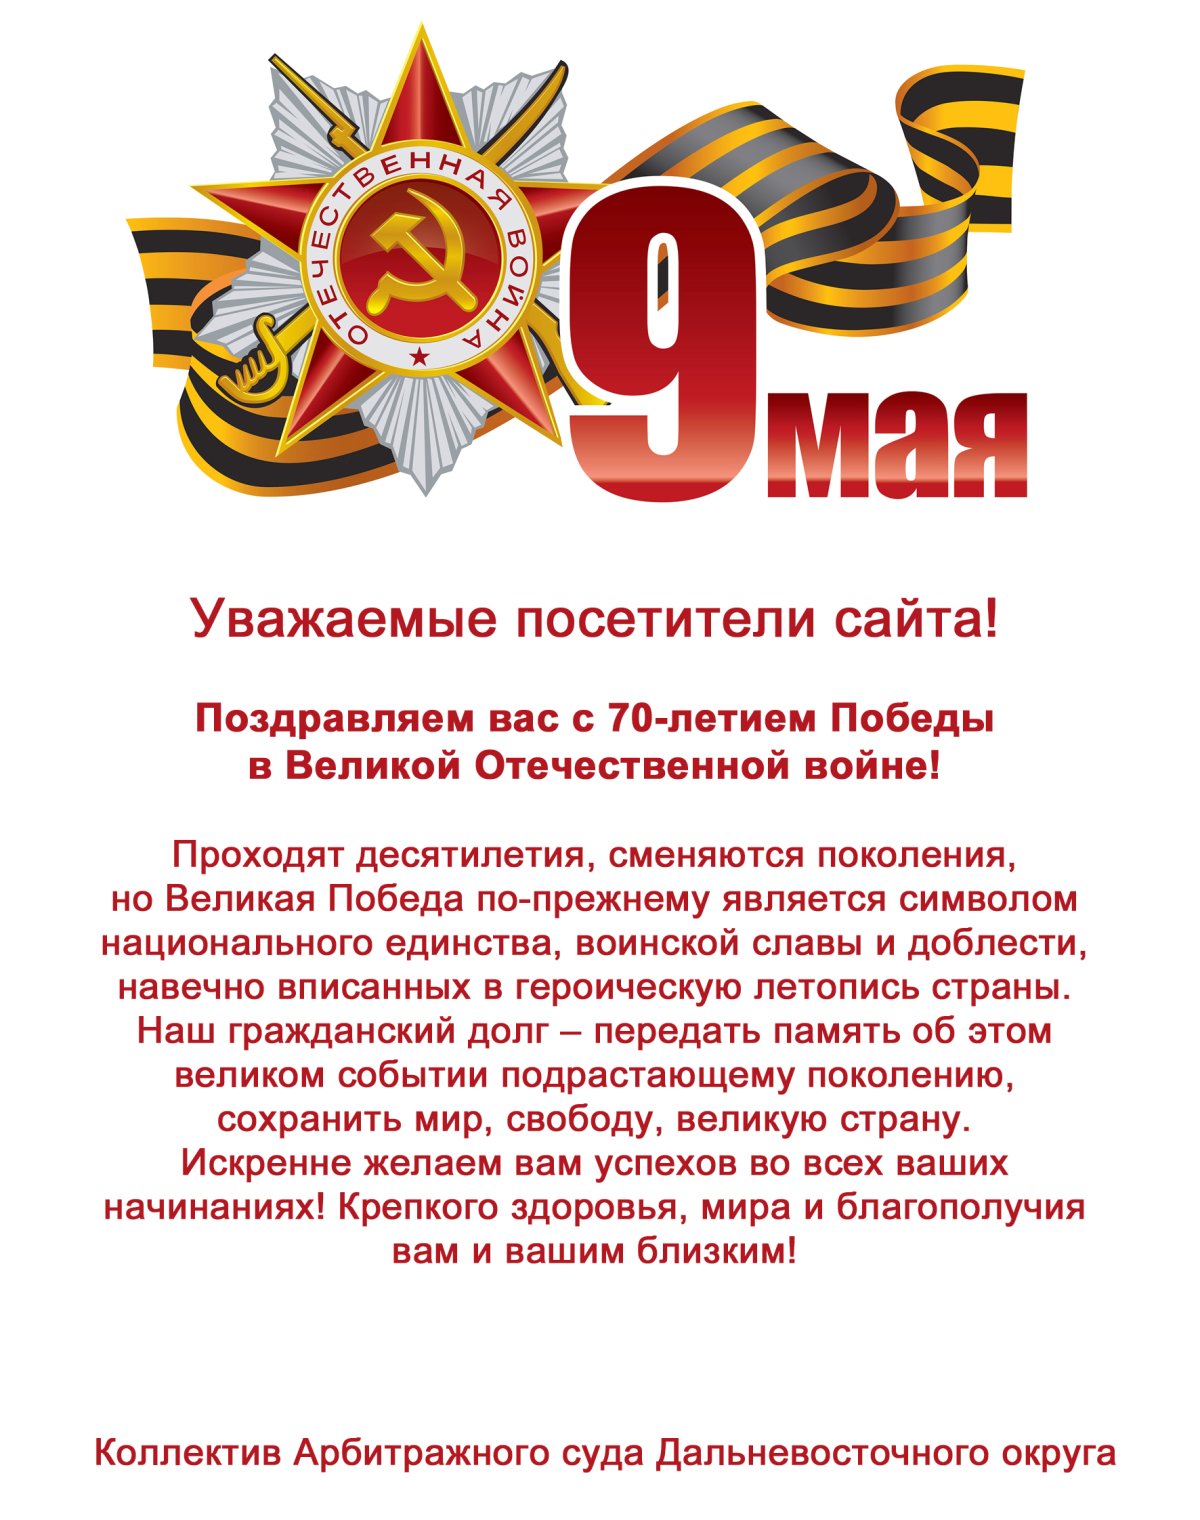 Поздравление с летием Победы в Великой Отечественной войне!